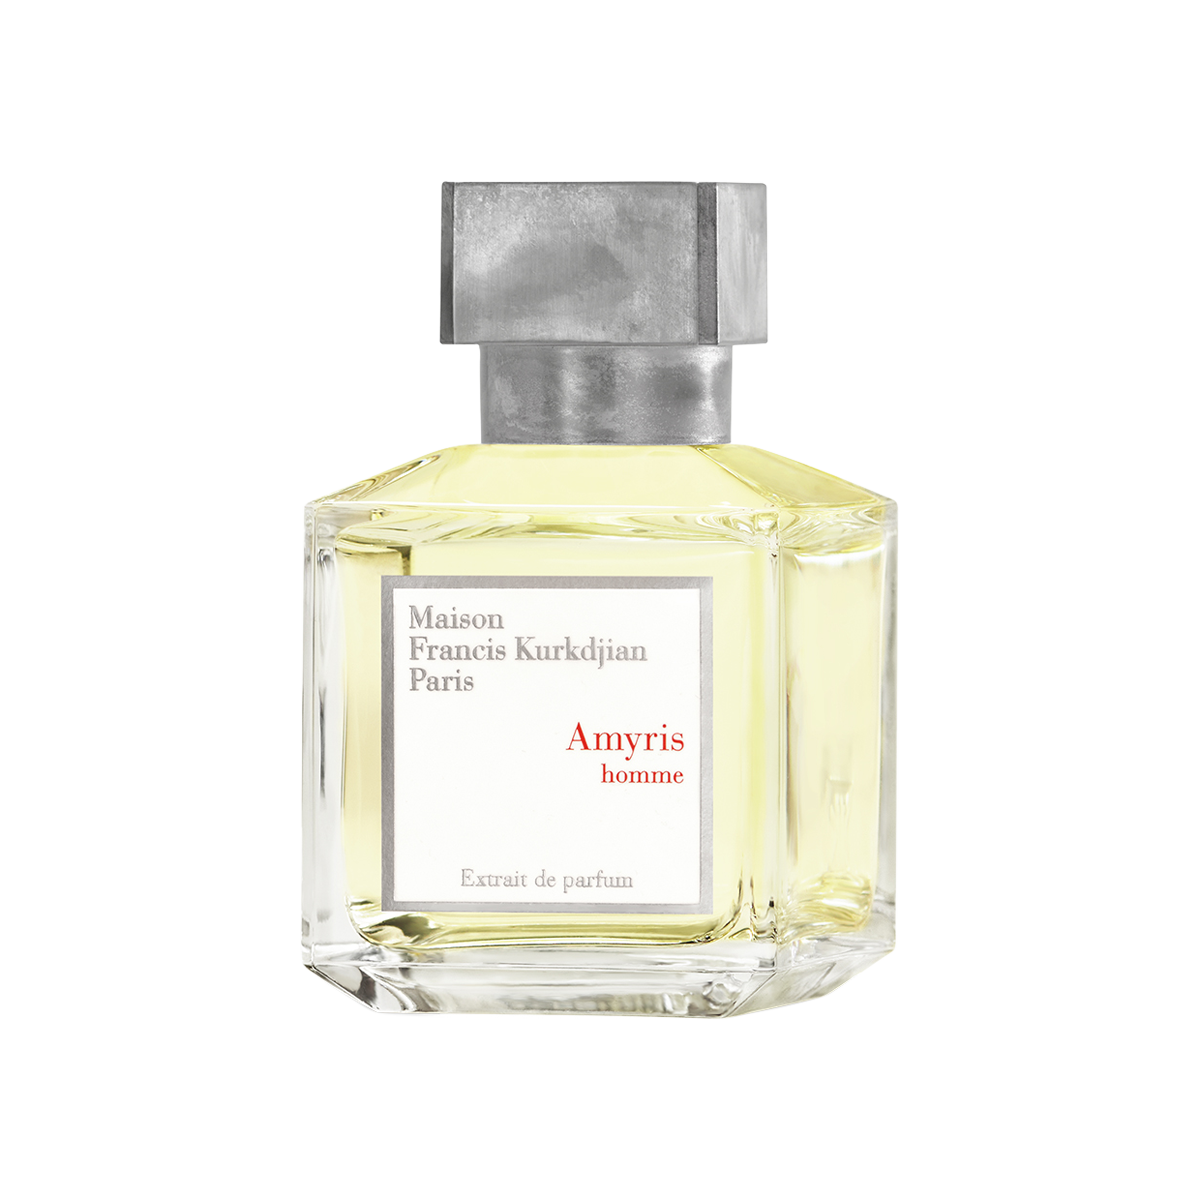 Maison Francis Kurkdjian - Amyris Homme Extrait de Parfum